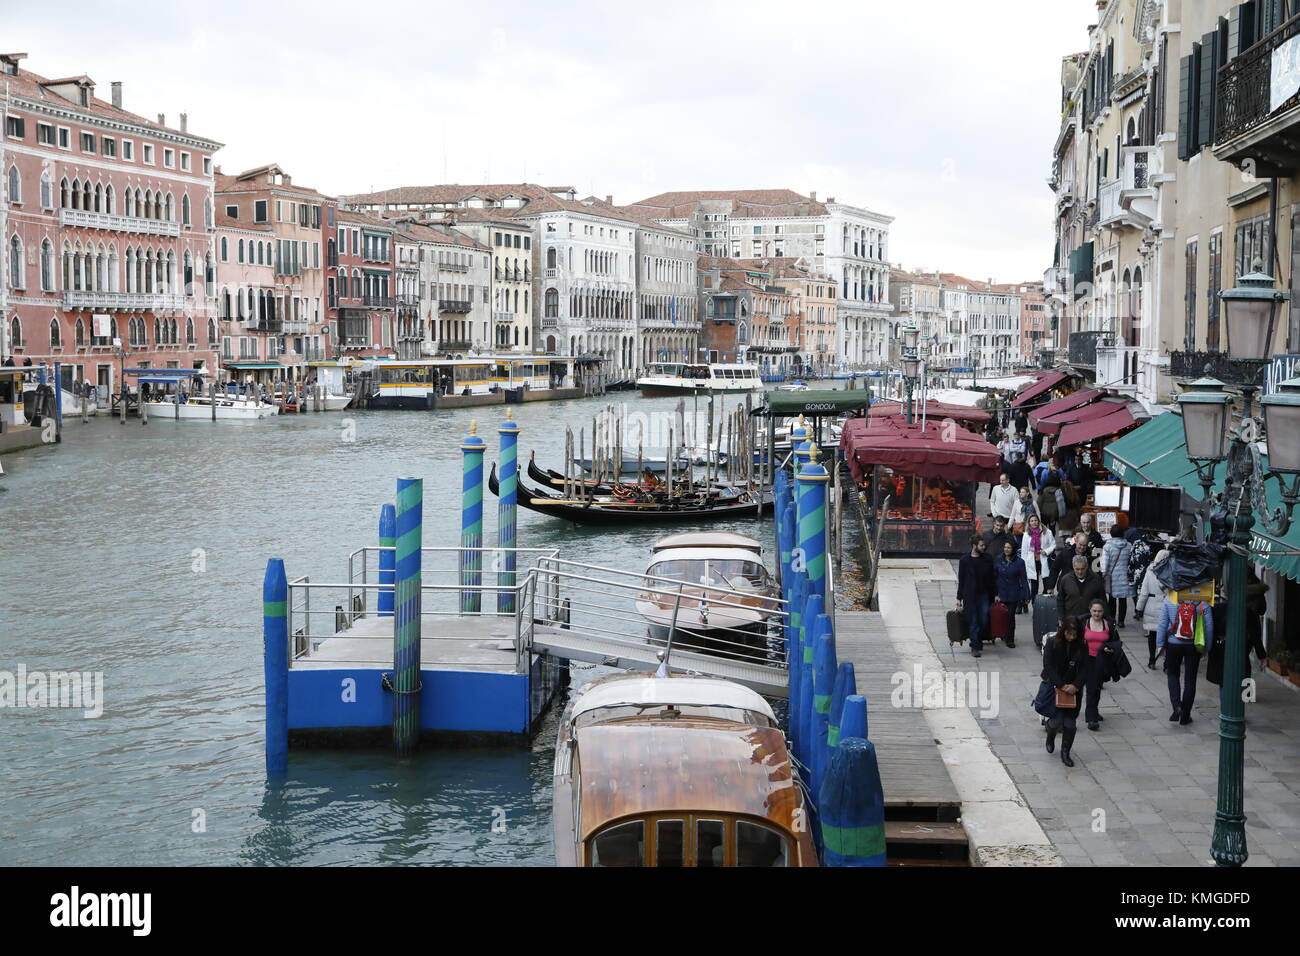 Venedig, Italien: Gondeln und Restaurants an der Grand Canal in der Nähe der Ponte di Rialto Brücke in Venedig, Italien. Stockfoto